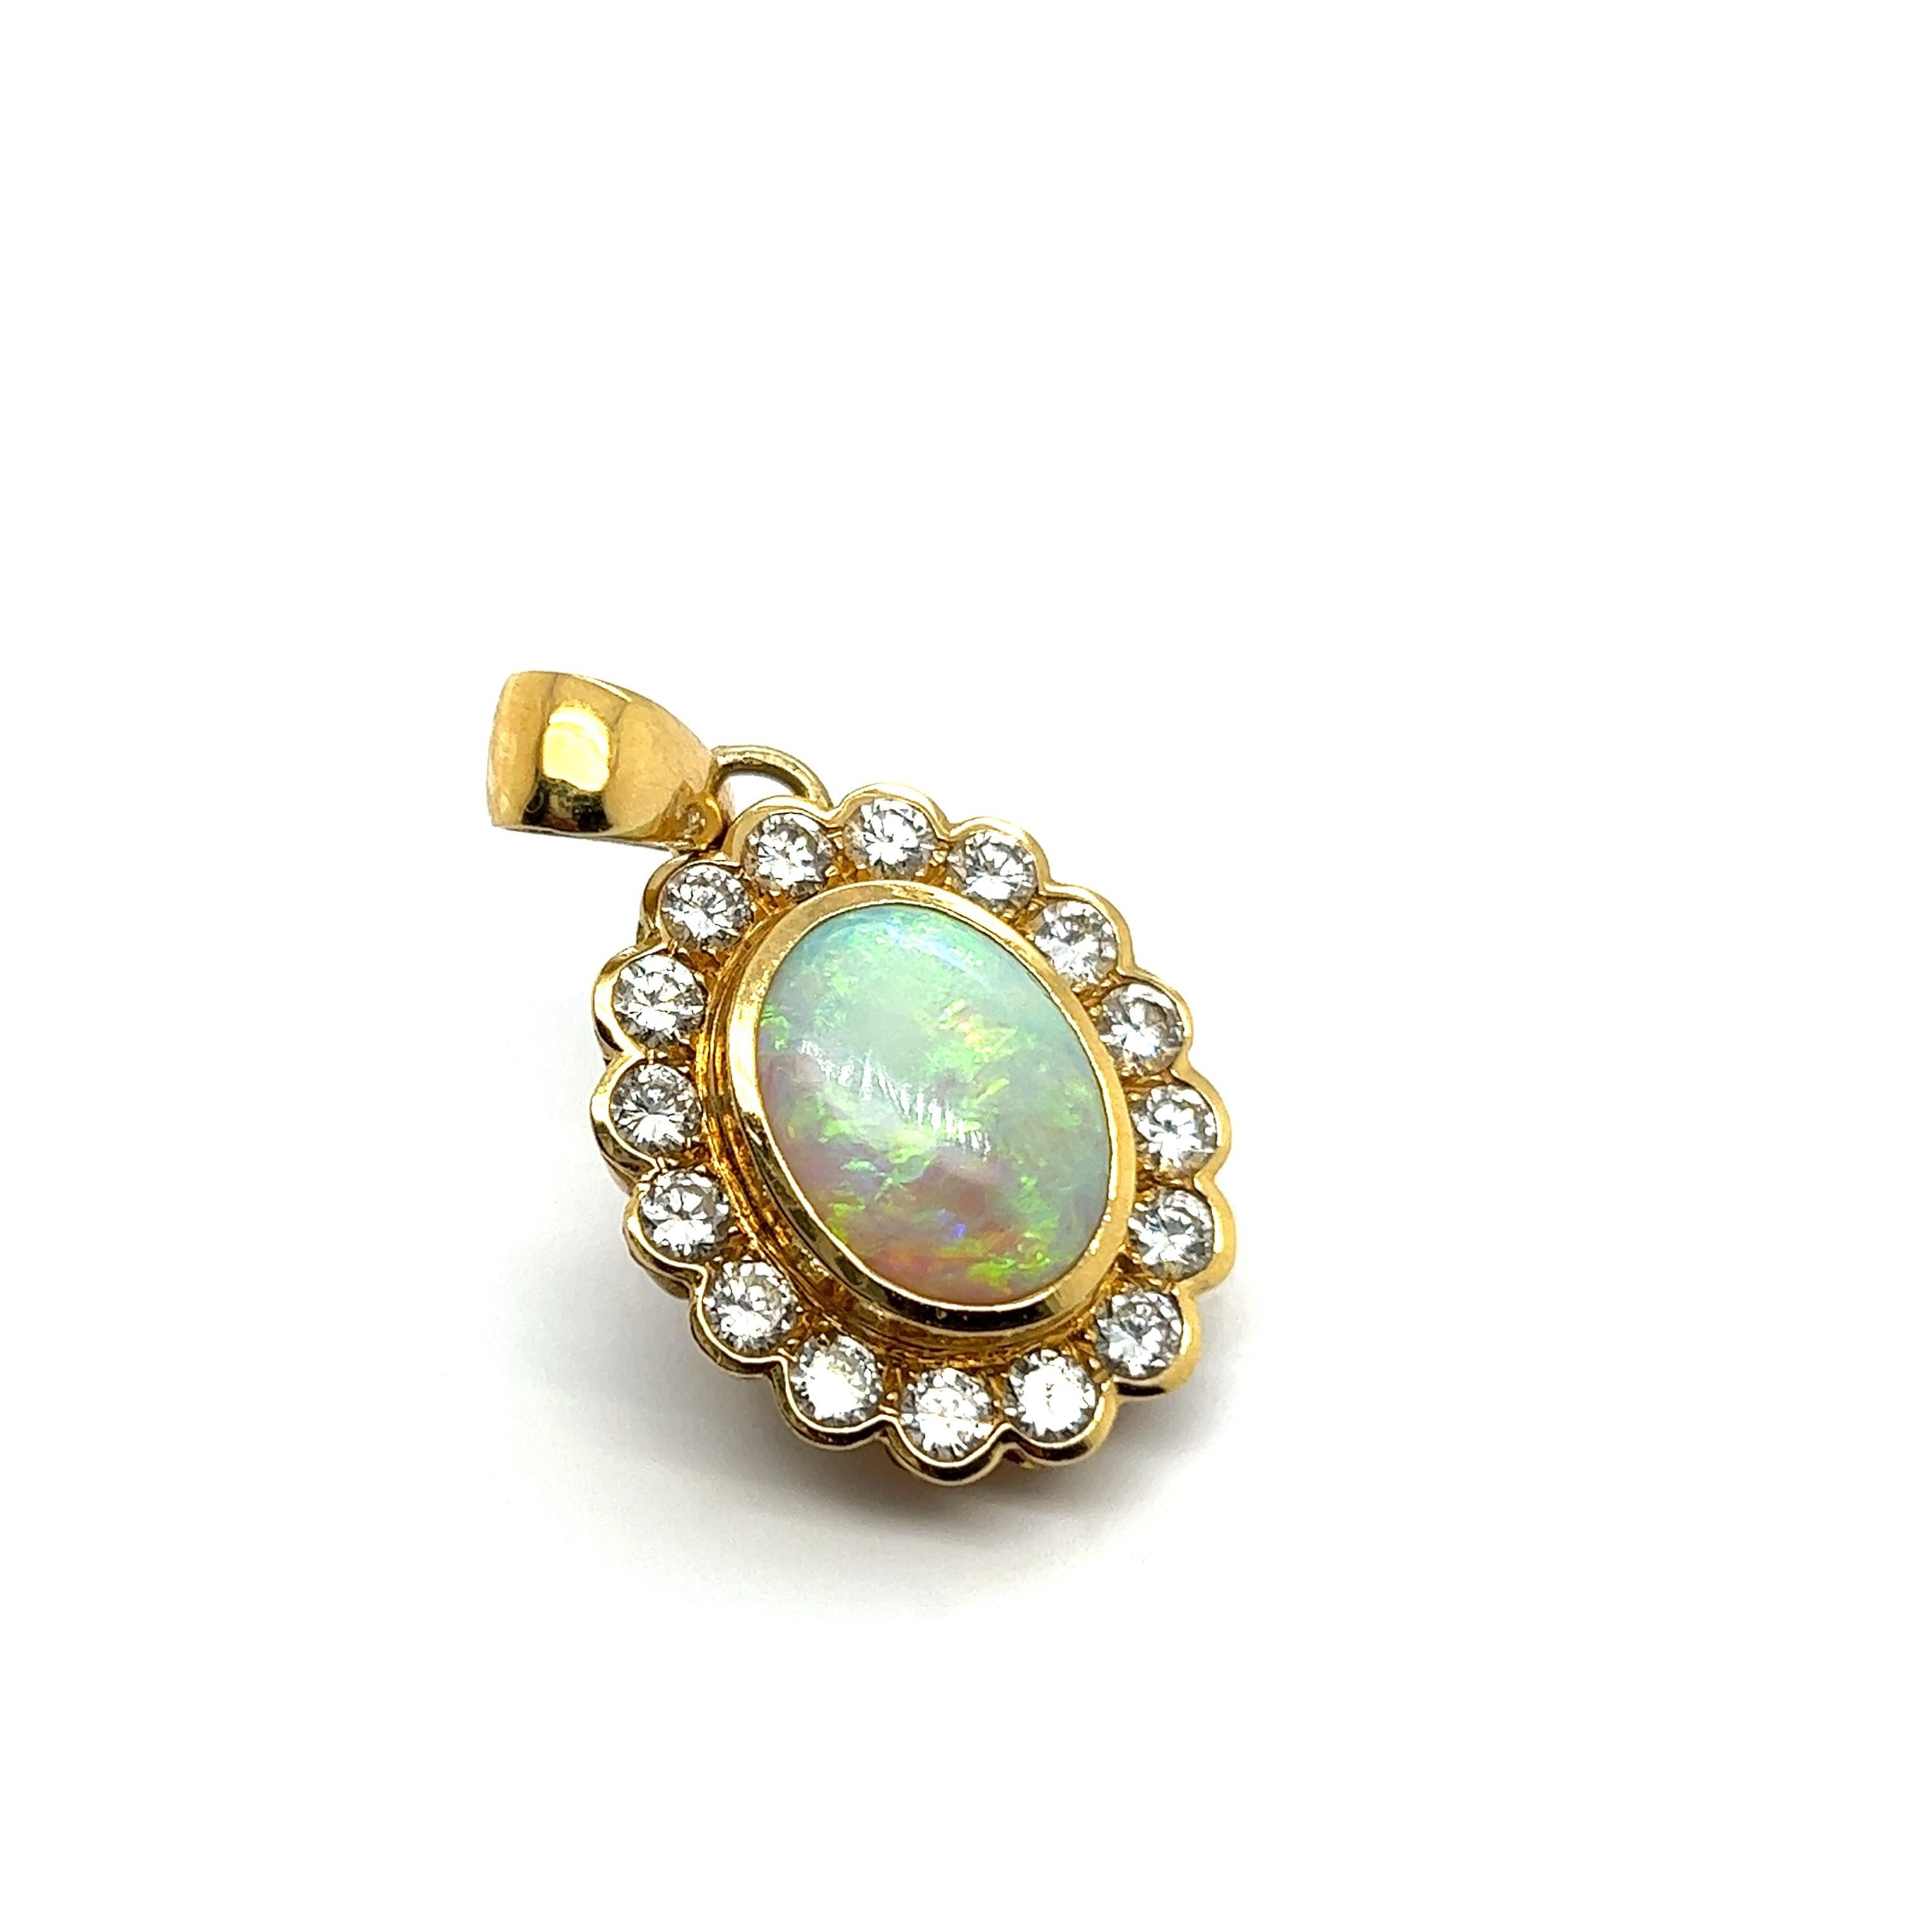 Der Anhänger mit weißem Opal aus 18 Karat Gelbgold ist ein luxuriöses und elegantes Schmuckstück. 

Der Opal mit seinem milchig-weißen Farbton unterstreicht ein faszinierendes Farbenspiel mit leuchtenden Gold-, Grün-, Blau- und Violetttönen. Der